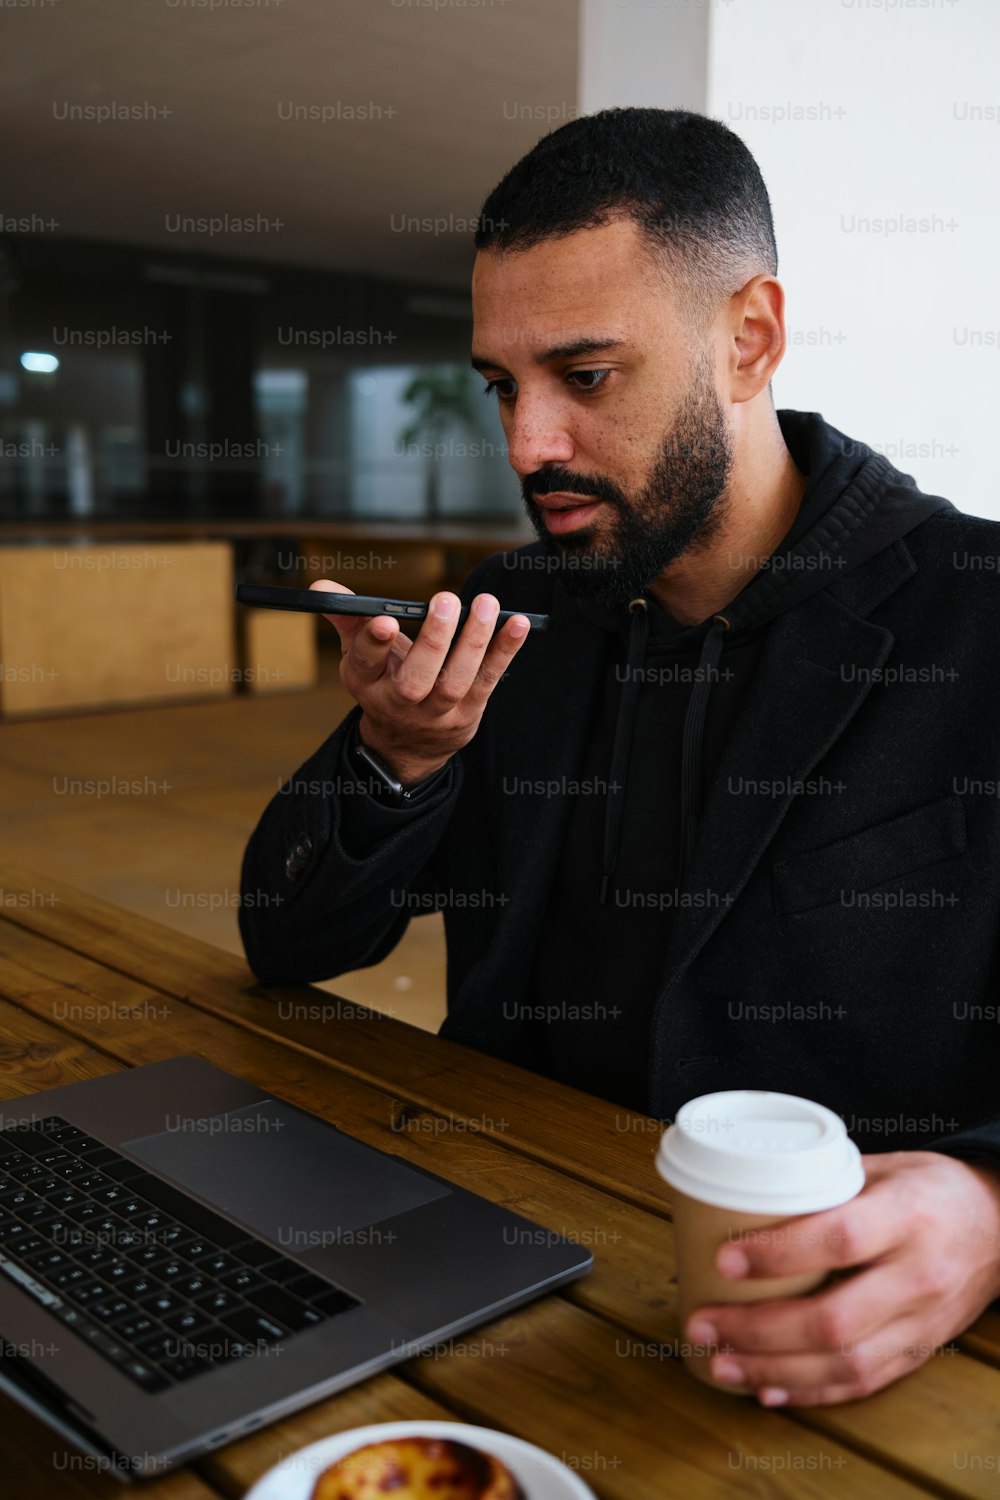 노트북과 커피 한 잔이 있는 테이블에 앉아 있는 남자